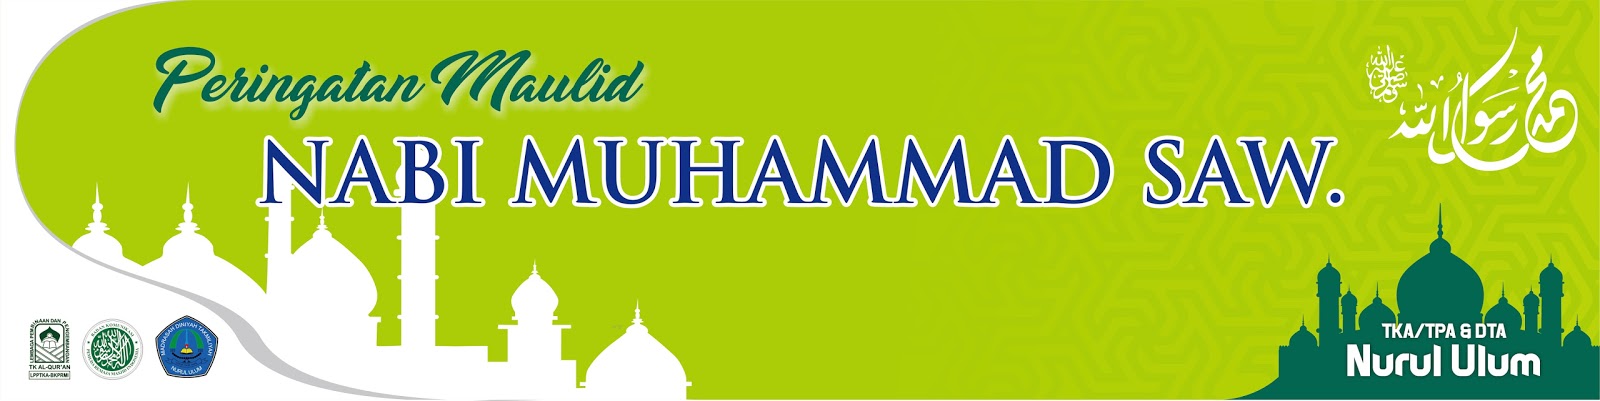 Download Template Spanduk Maulid Nabi Muhammad SAW. 2017 